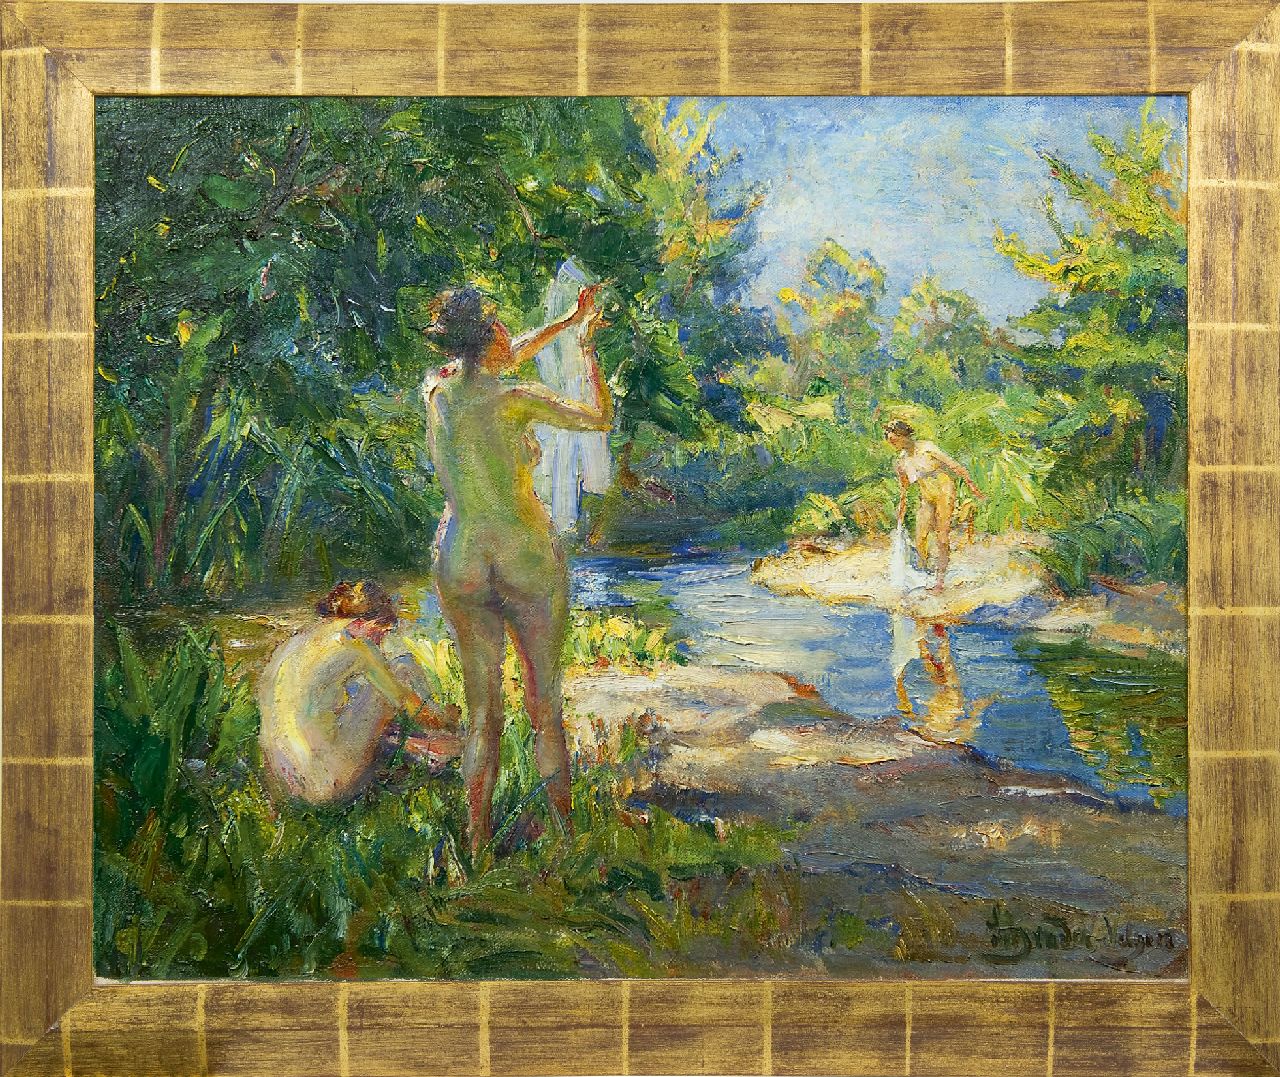 Schrader-Velgen C.H.  | Carl Hans Schrader-Velgen, Three bathing women, oil on canvas 65.4 x 79.9 cm, signed l.r.